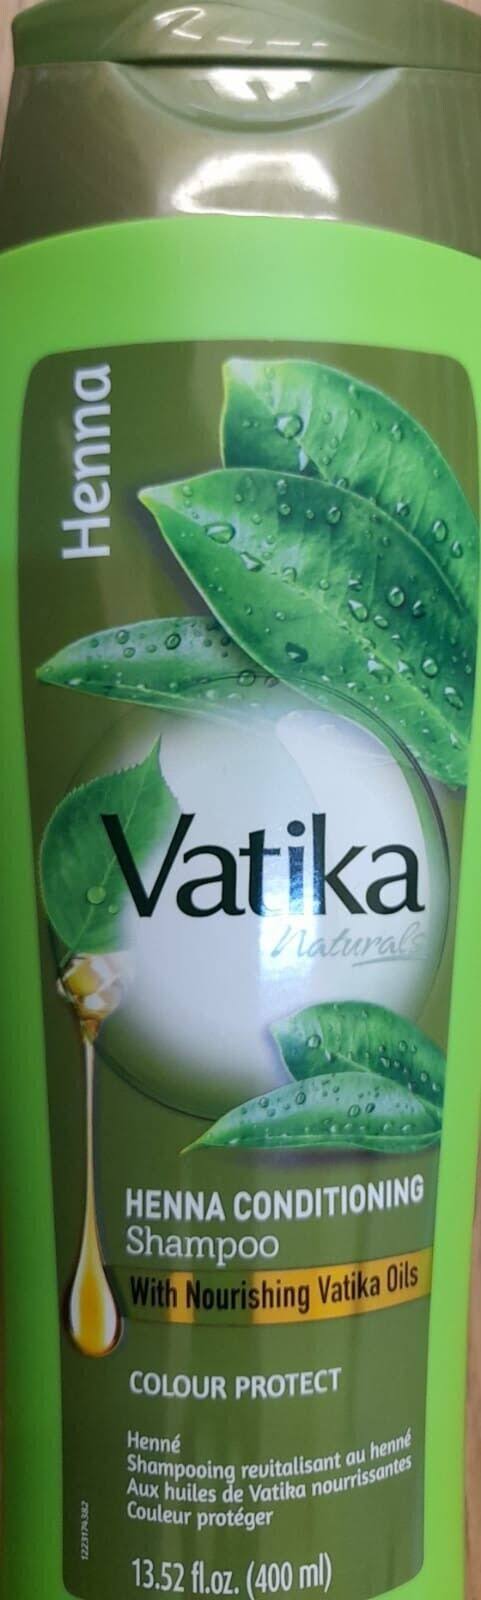 Vatika Naturals Multivitamin Henna Shampoo 400ml Colour Protect